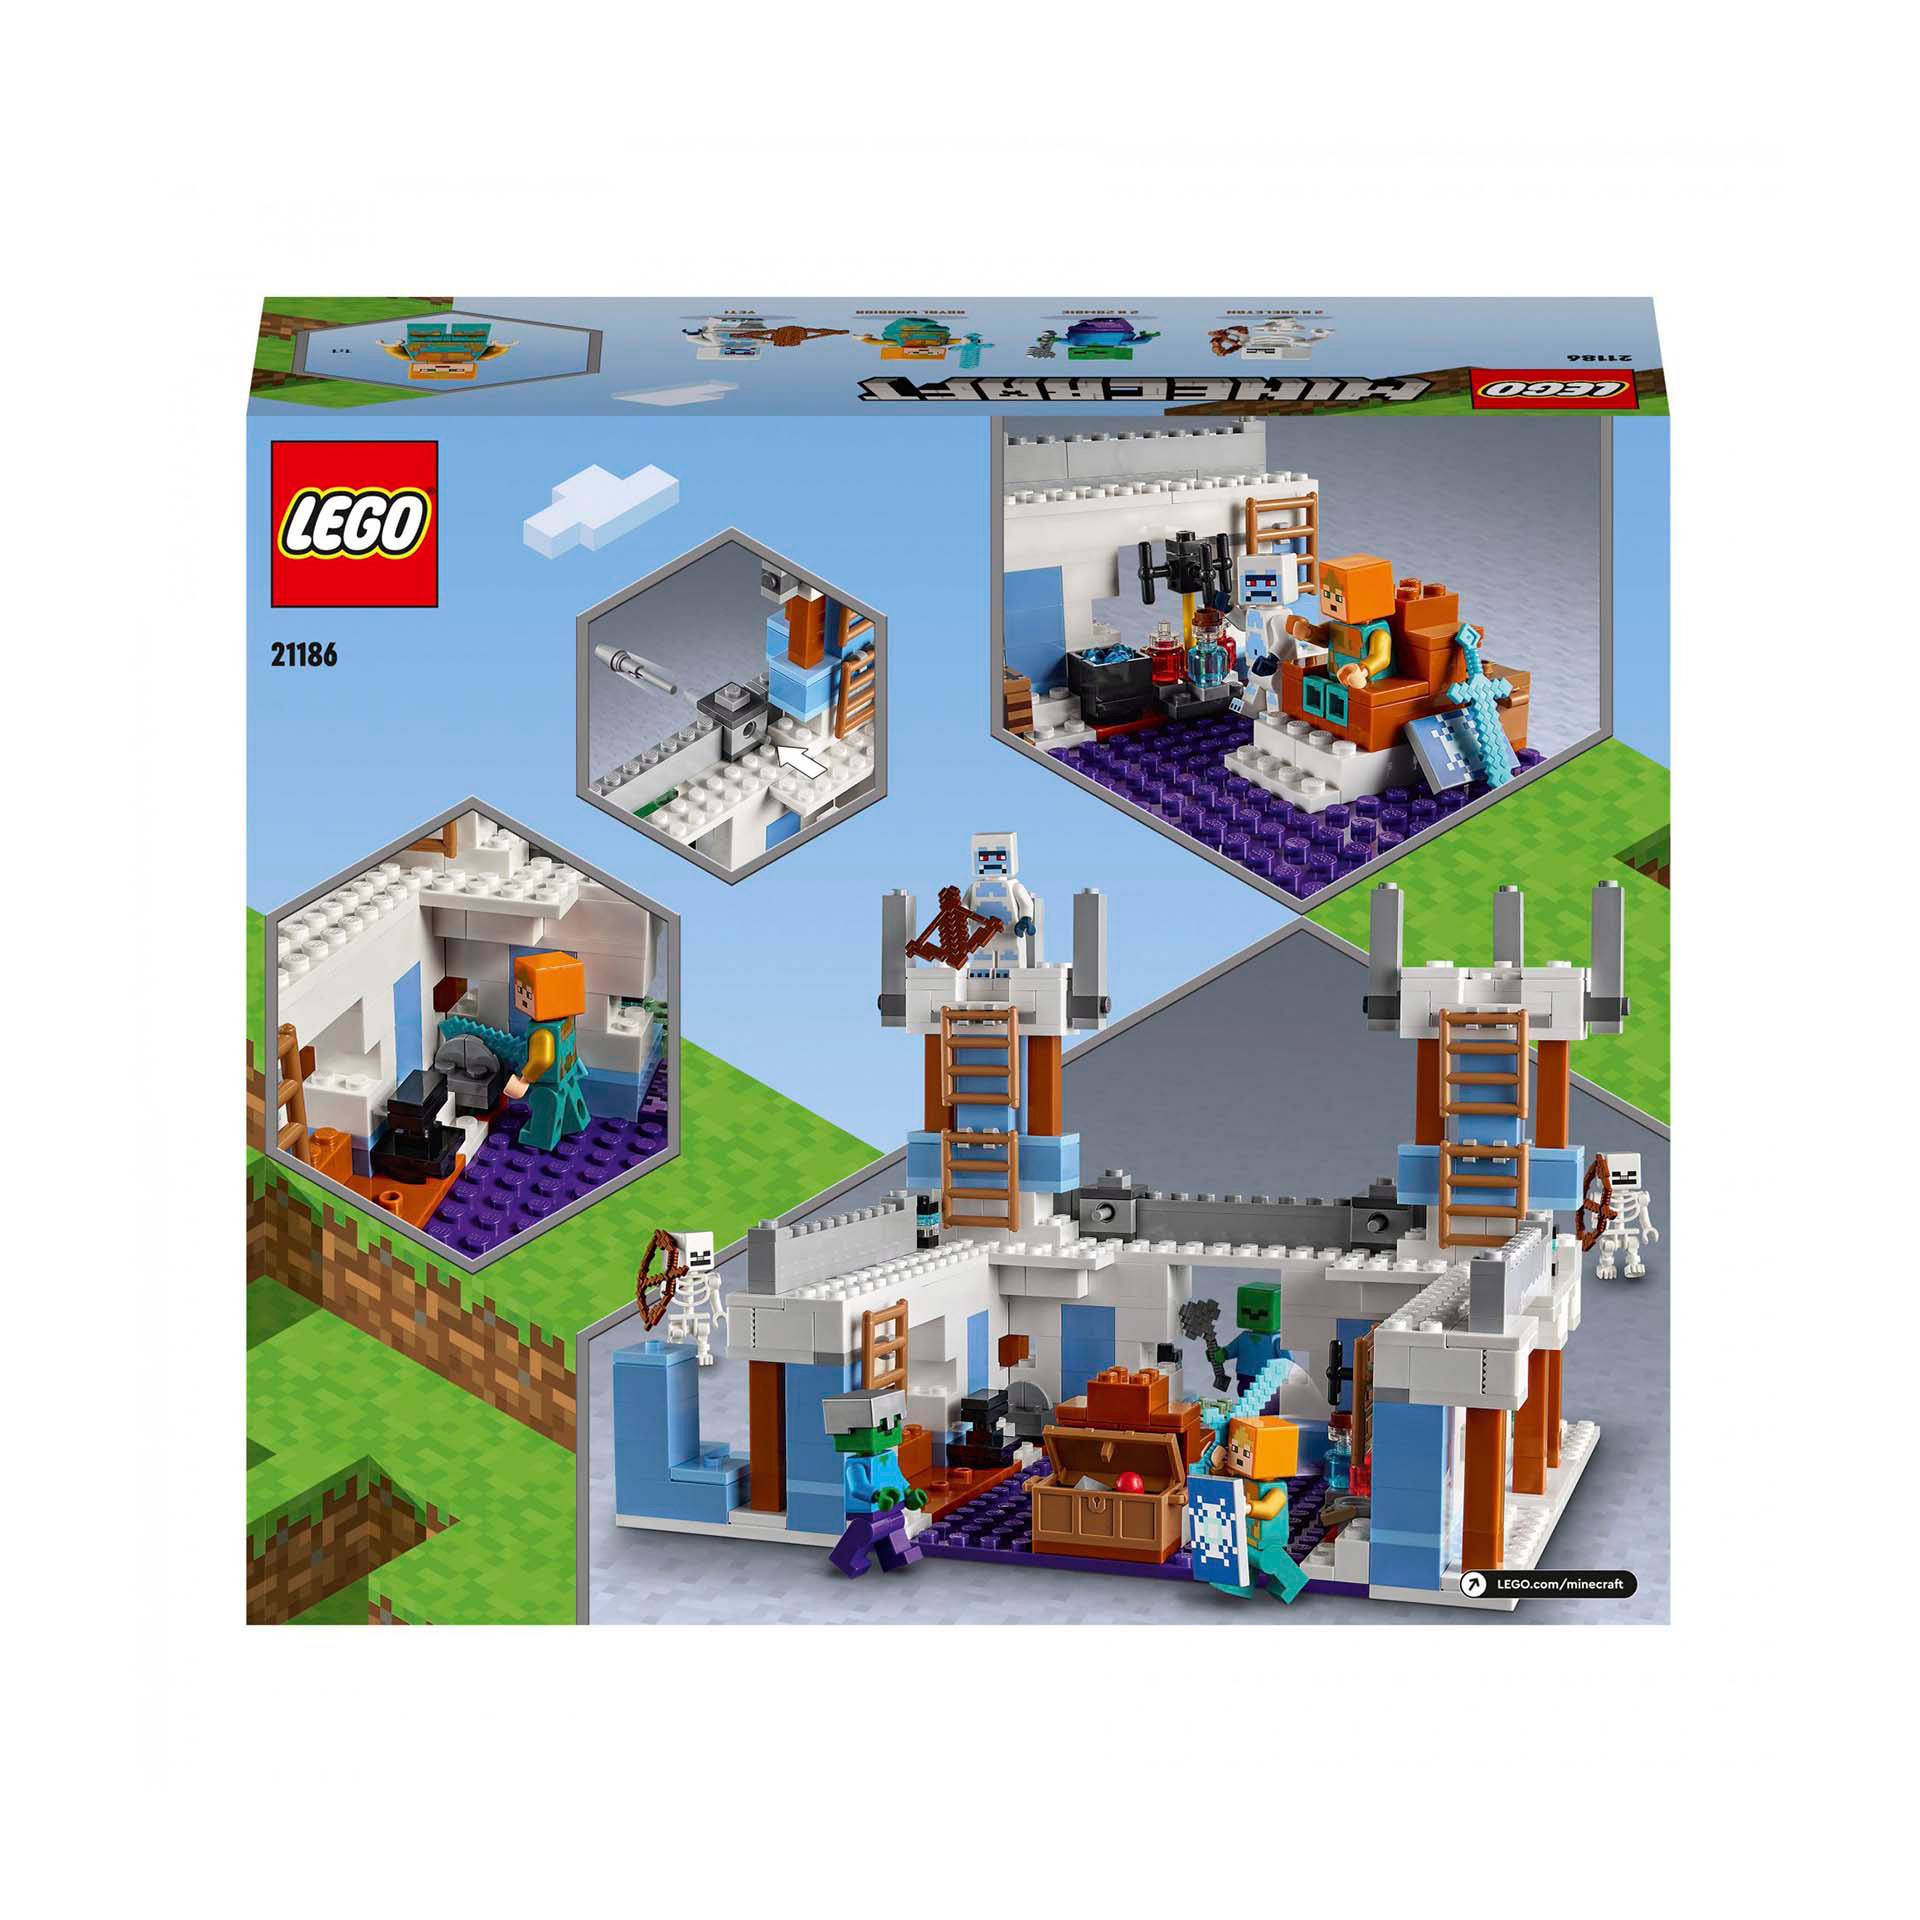 LEGO Minecraft Il Castello di Ghiaccio, Giocattoli Creativi da Costruire con Fig 21186, , large